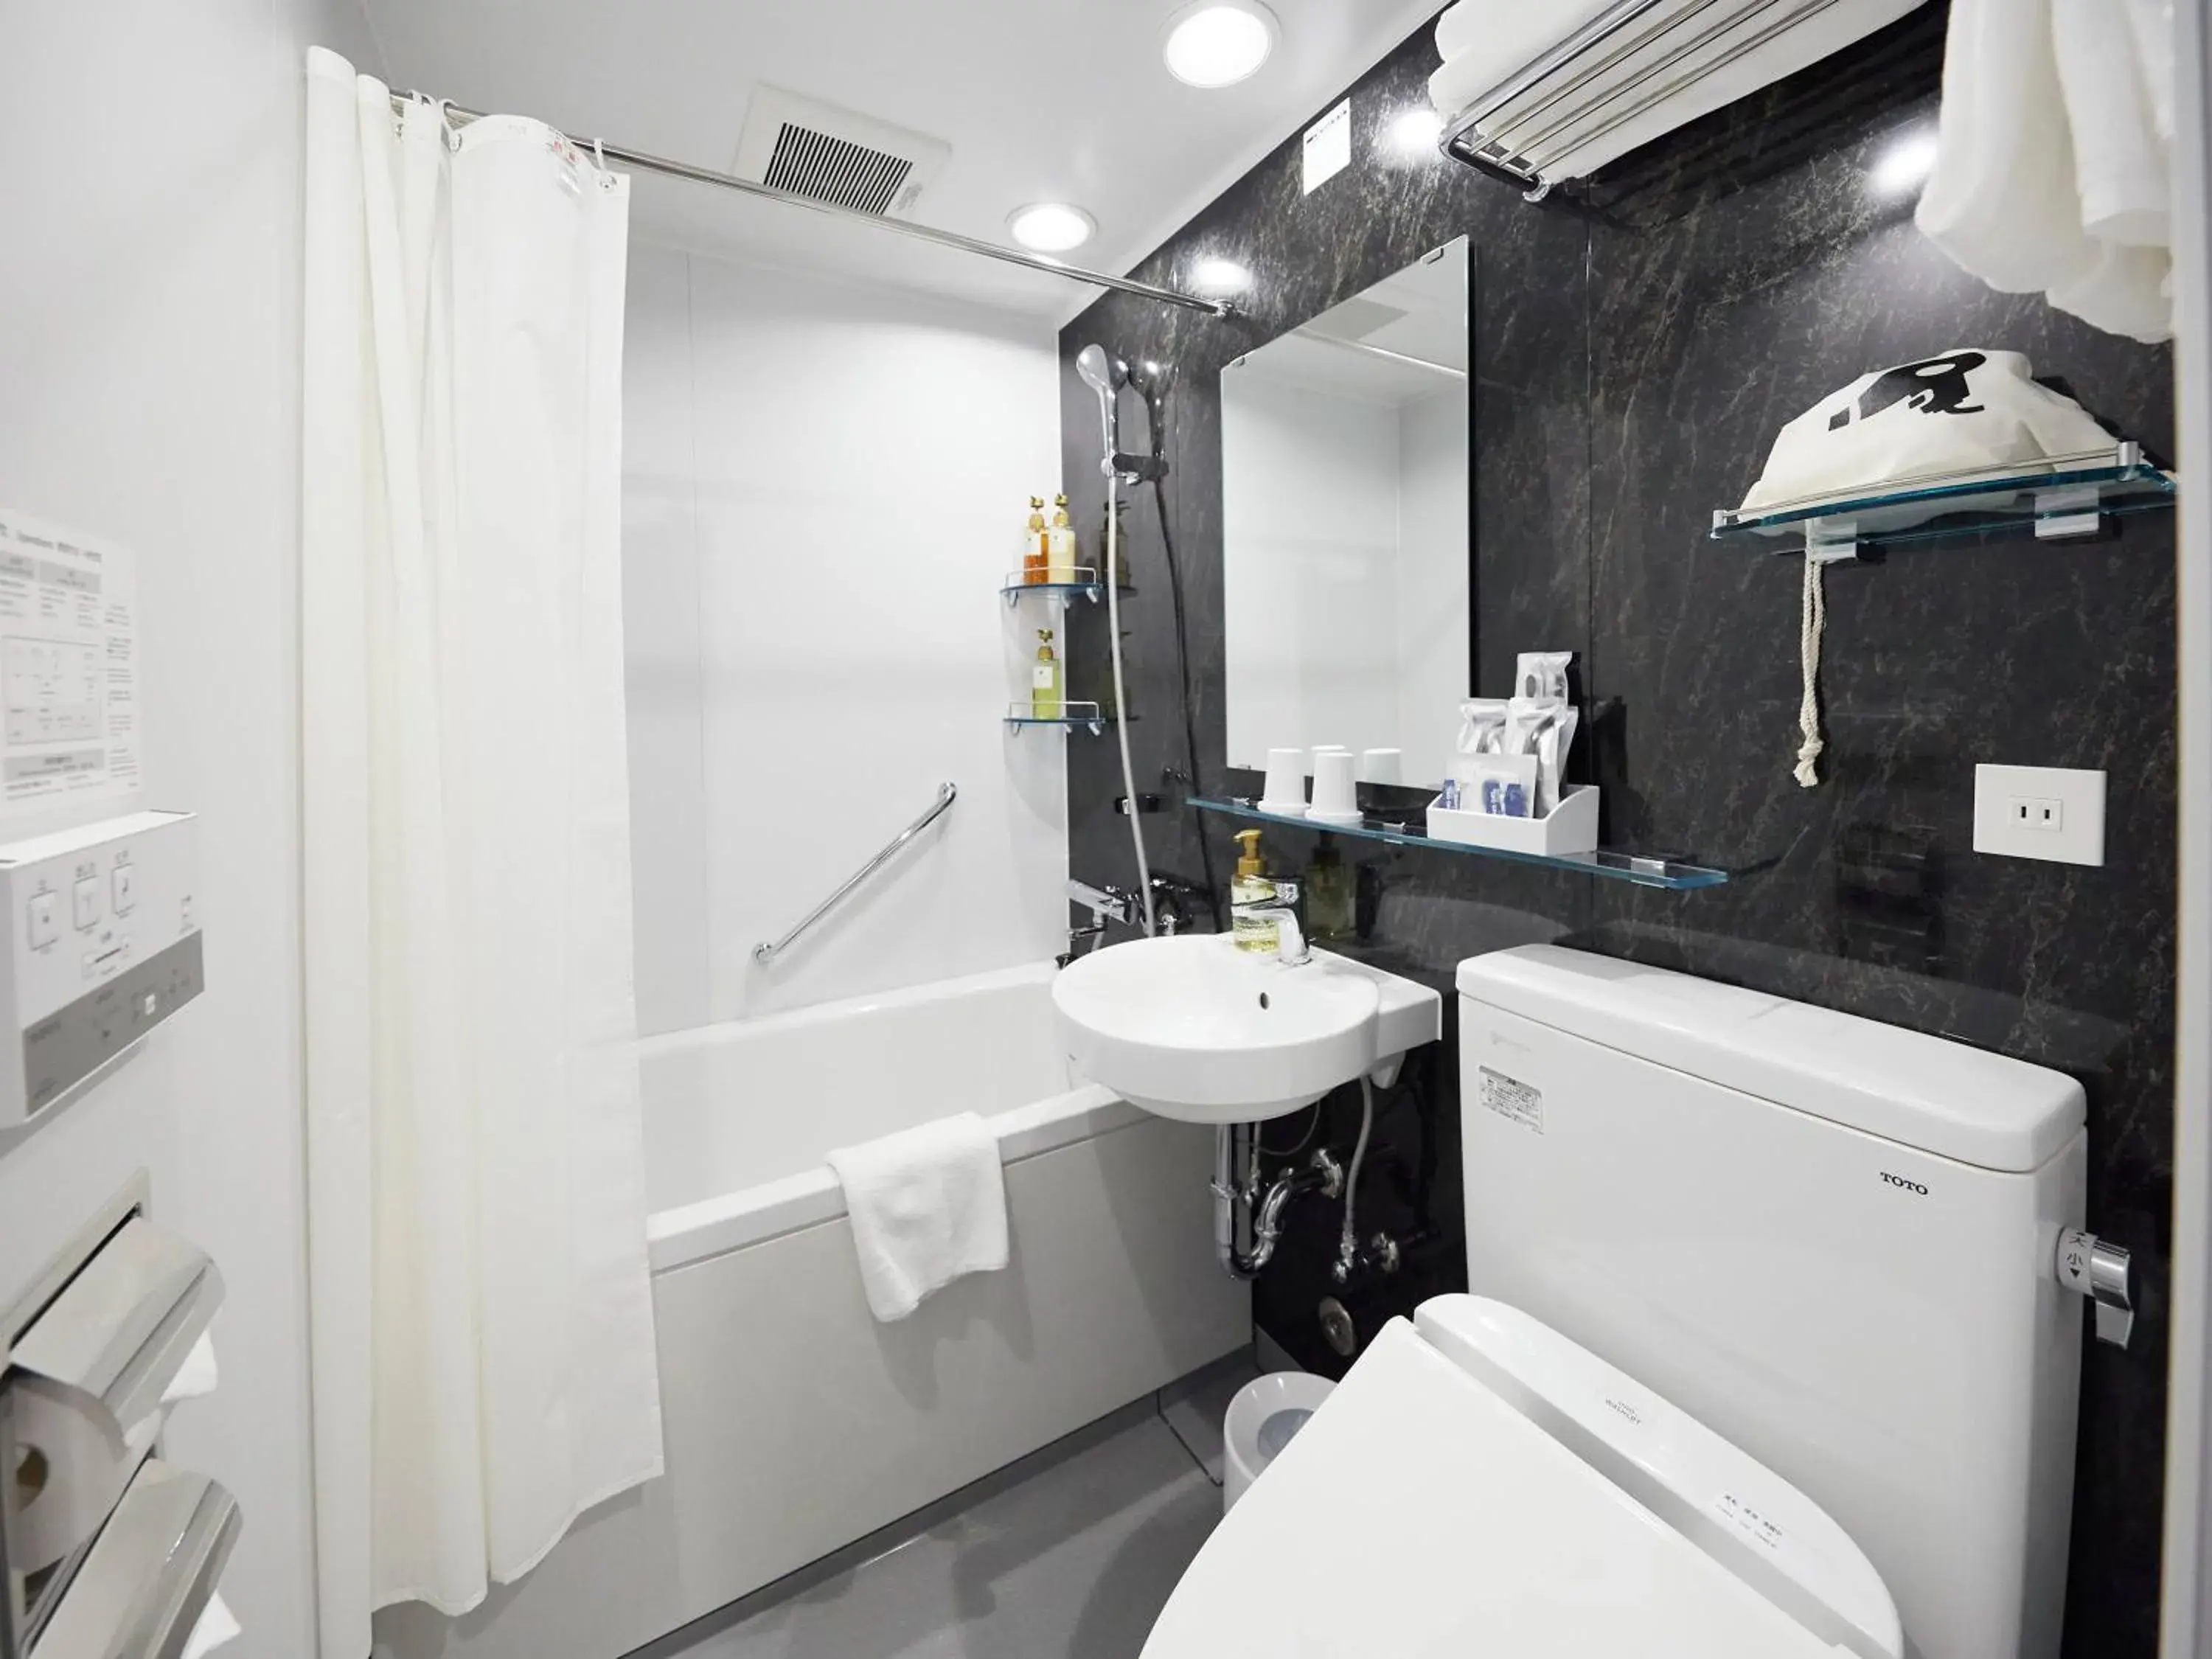 Shower, Bathroom in Henn na Hotel Tokyo Asakusabashi